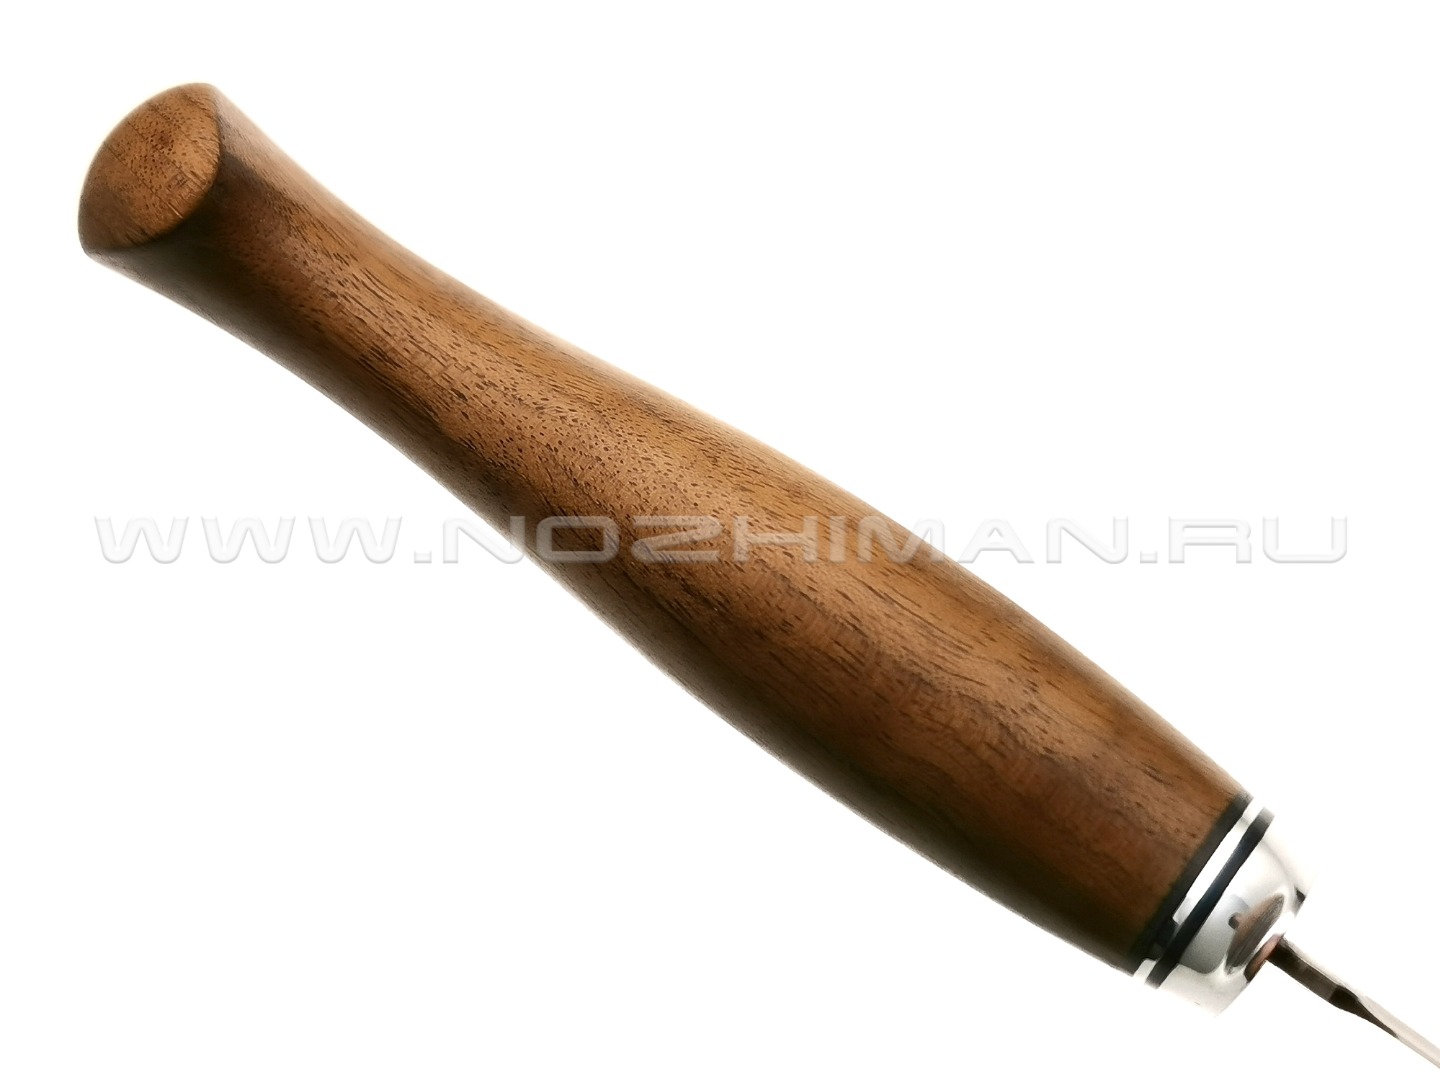 Филейный нож №2, булатная сталь, рукоять дерево орех (Товарищество Завьялова)